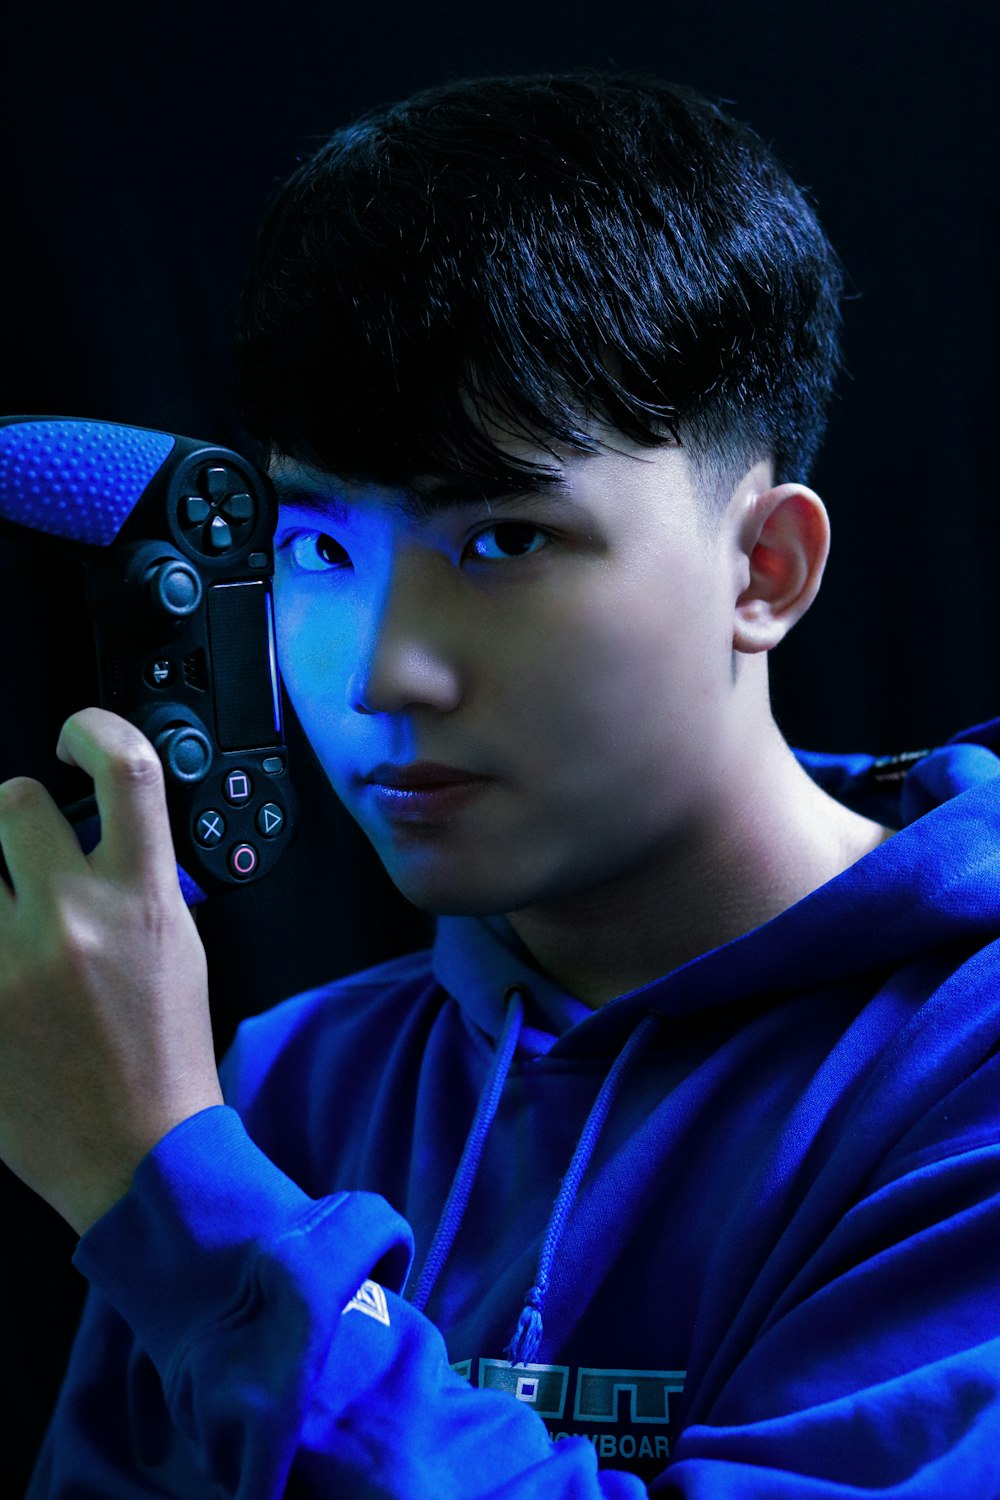 menino na camisa azul de manga comprida segurando o controlador de jogo preto